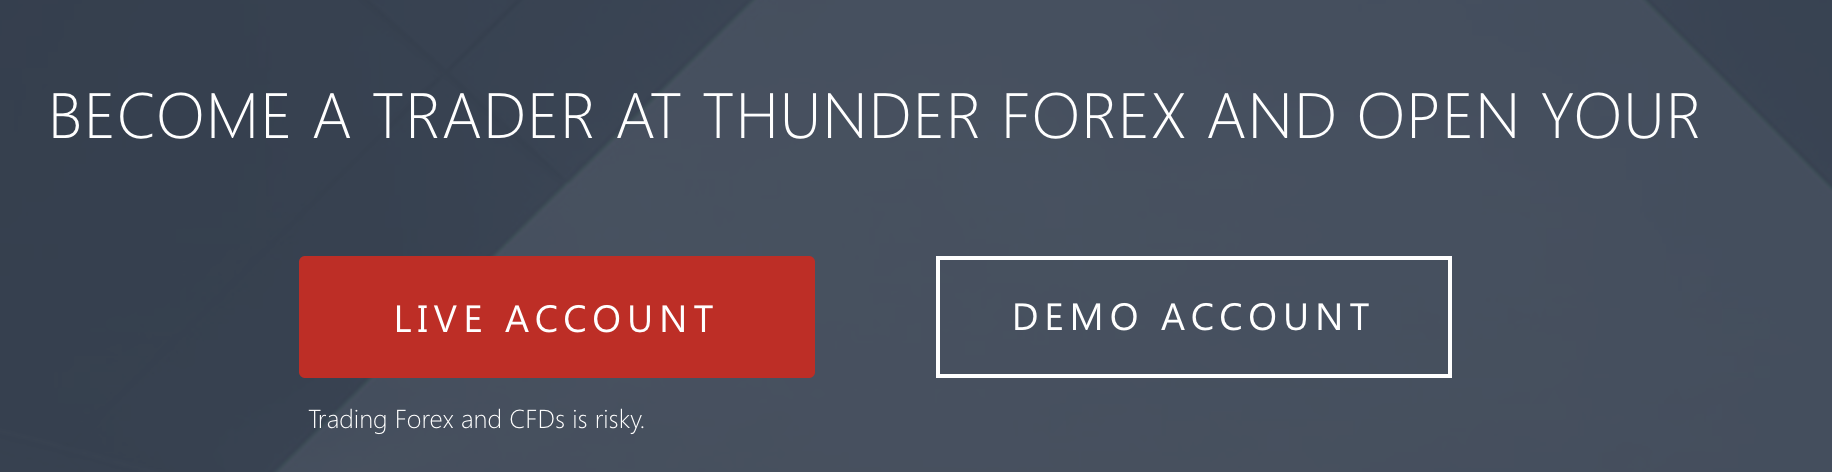 Posibilitatea de a practica tranzacționarea cu un cont demo cu Thunder Forex